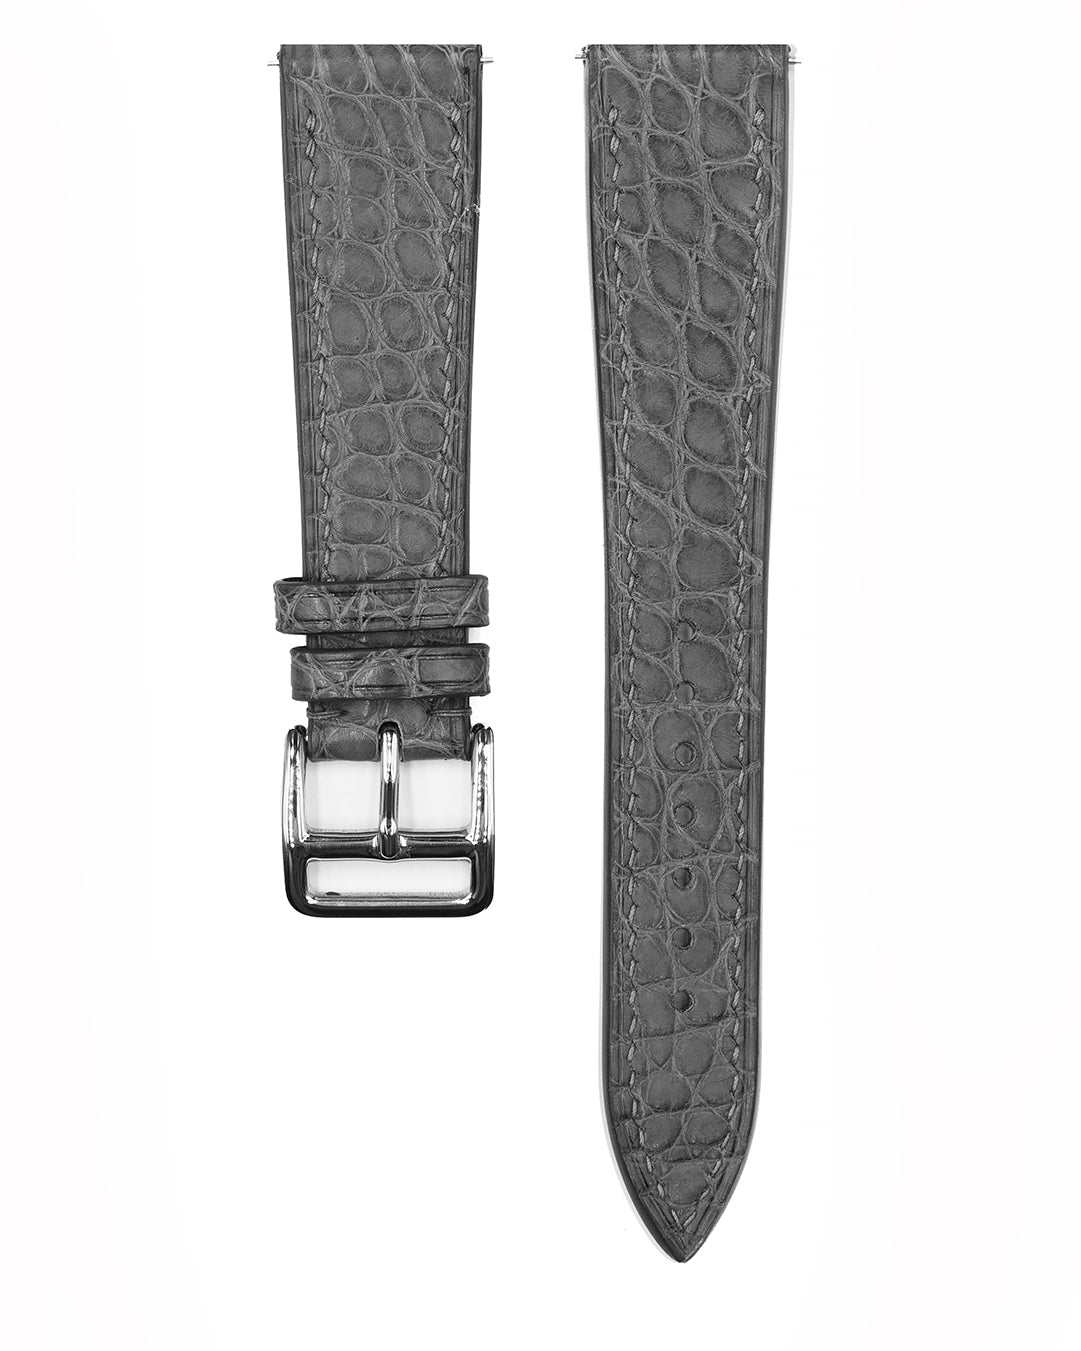 (20mm) Alligator Leather - Serpentine Grey, round scale